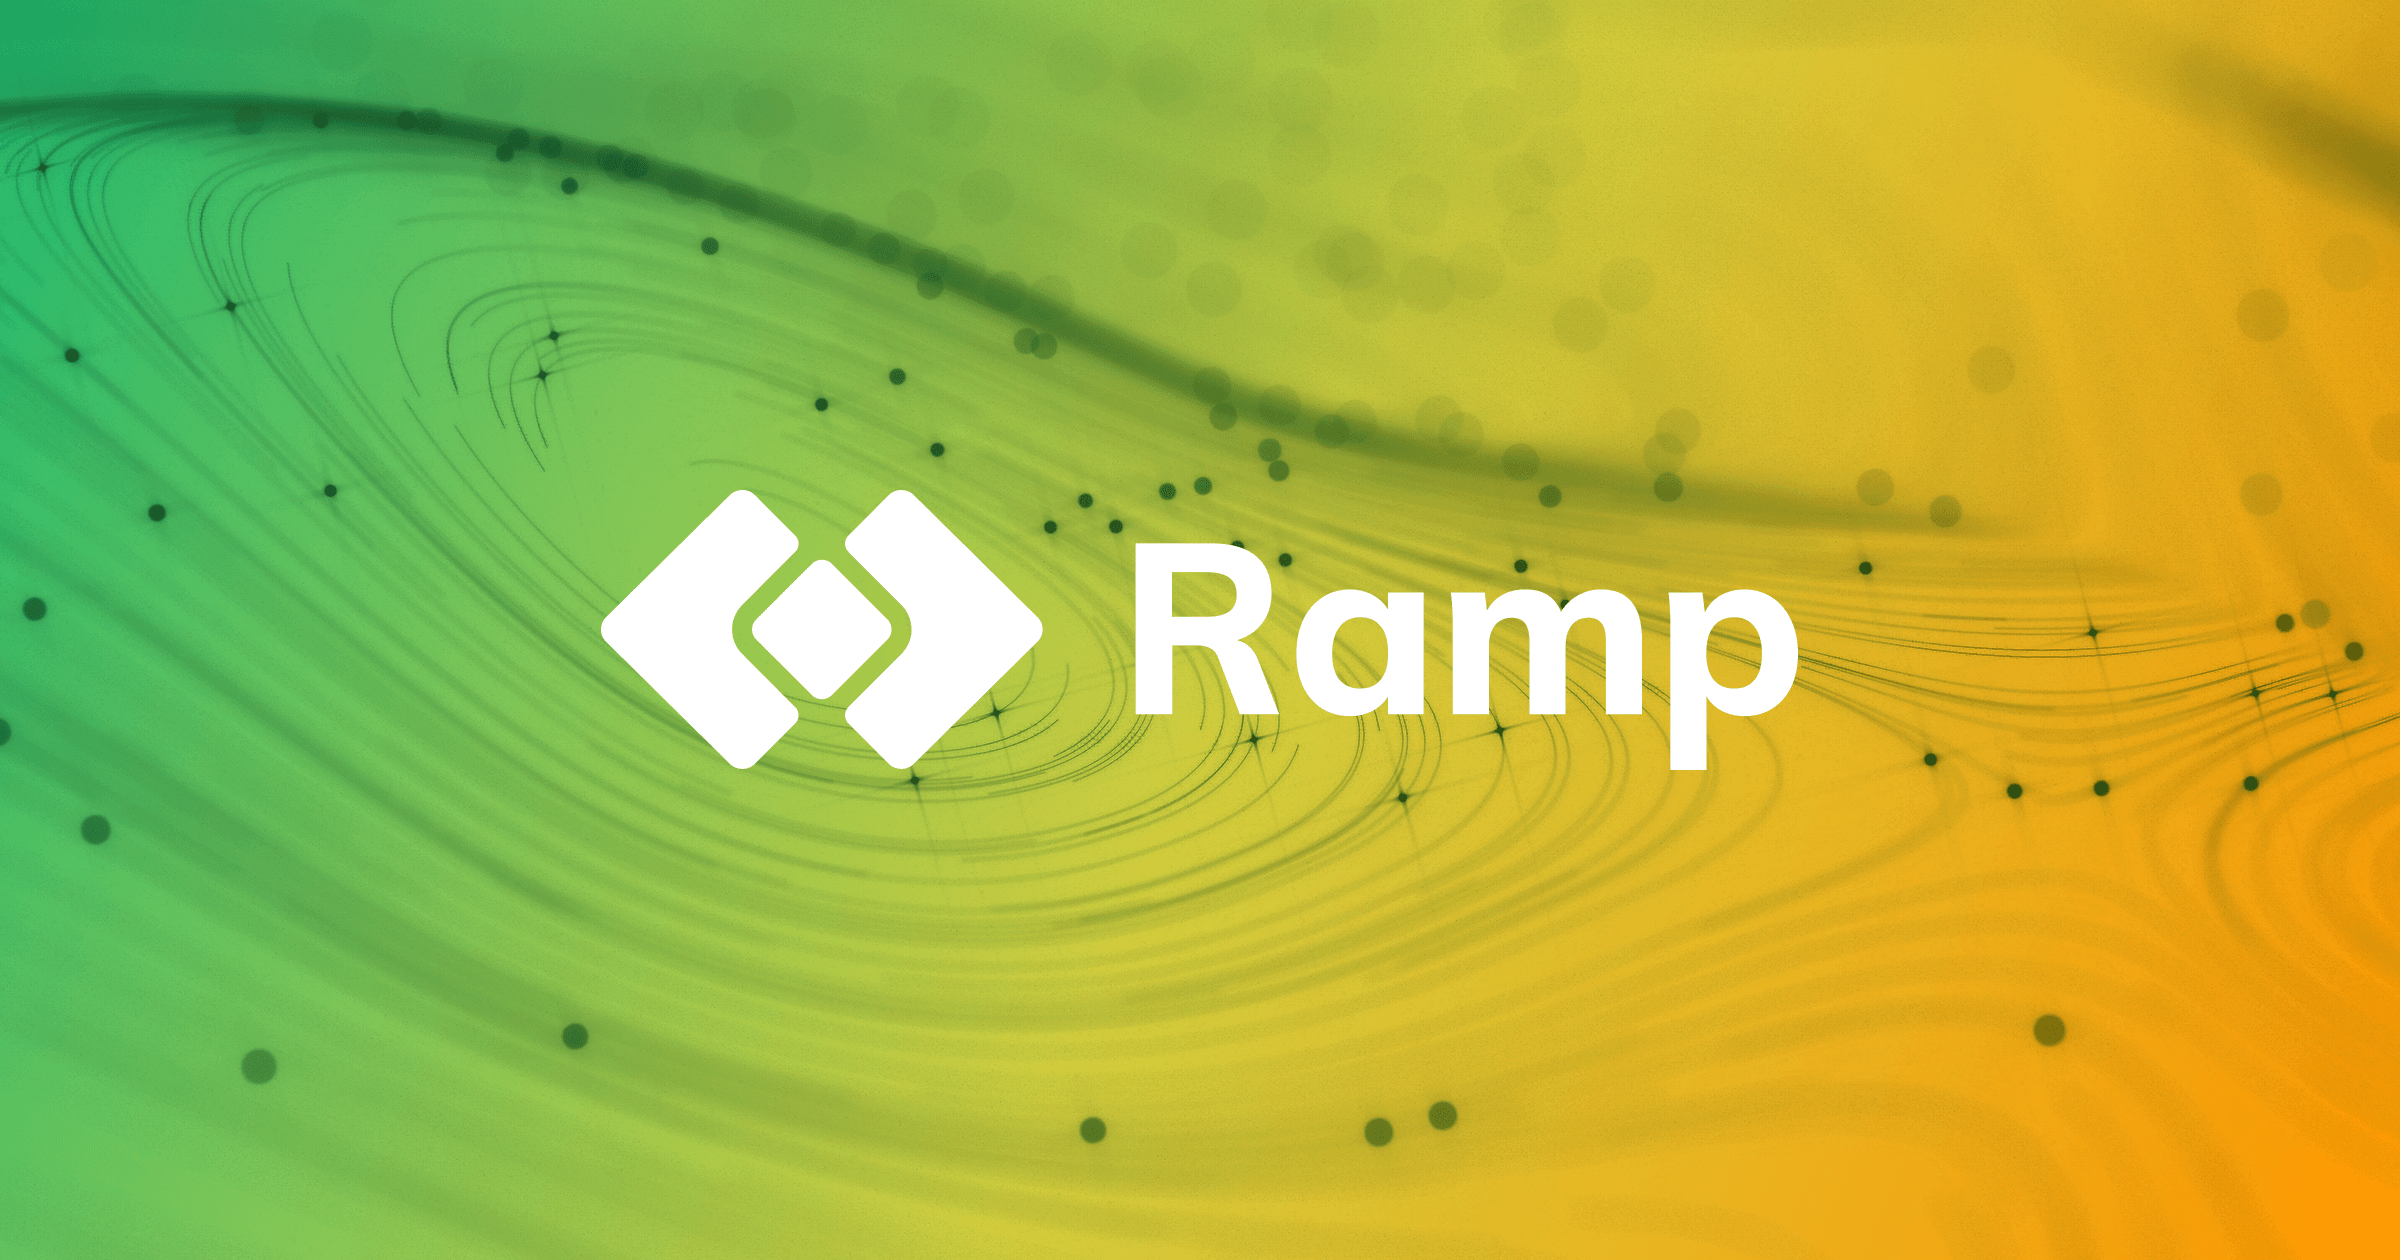 Ramp pozyskał 220 mln zł. Projekt z branży krypto pobił rekord polskich startupów!